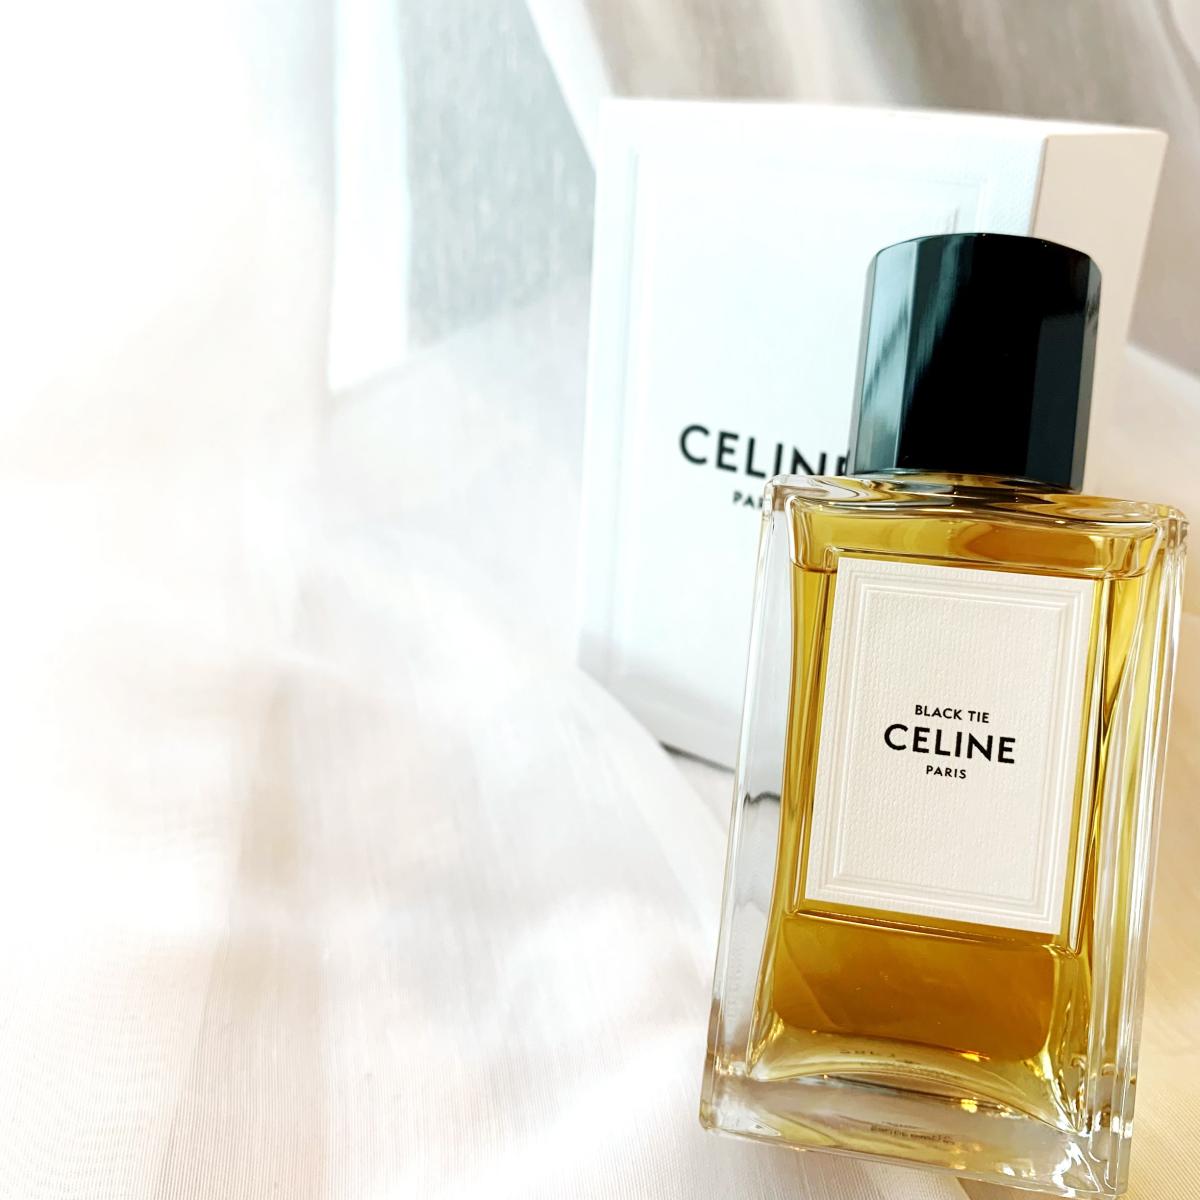 Black Tie Celine parfum - un parfum pour homme et femme 2019